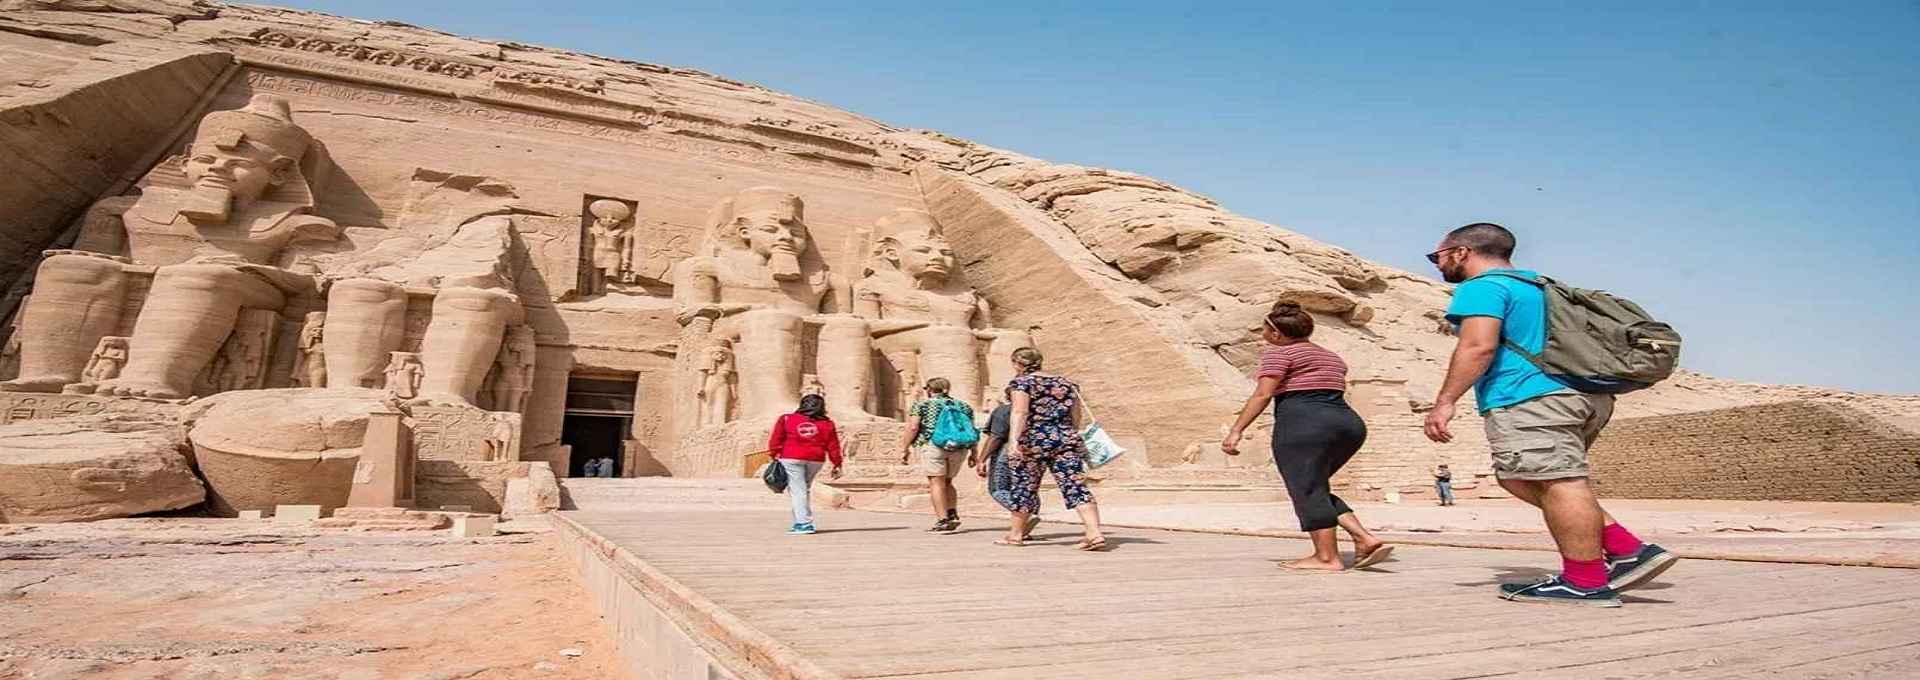 寻找最适合您的埃及旅游套餐预订埃及旅游套餐和埃及活动-abu-simbel-temple-aijiluxing